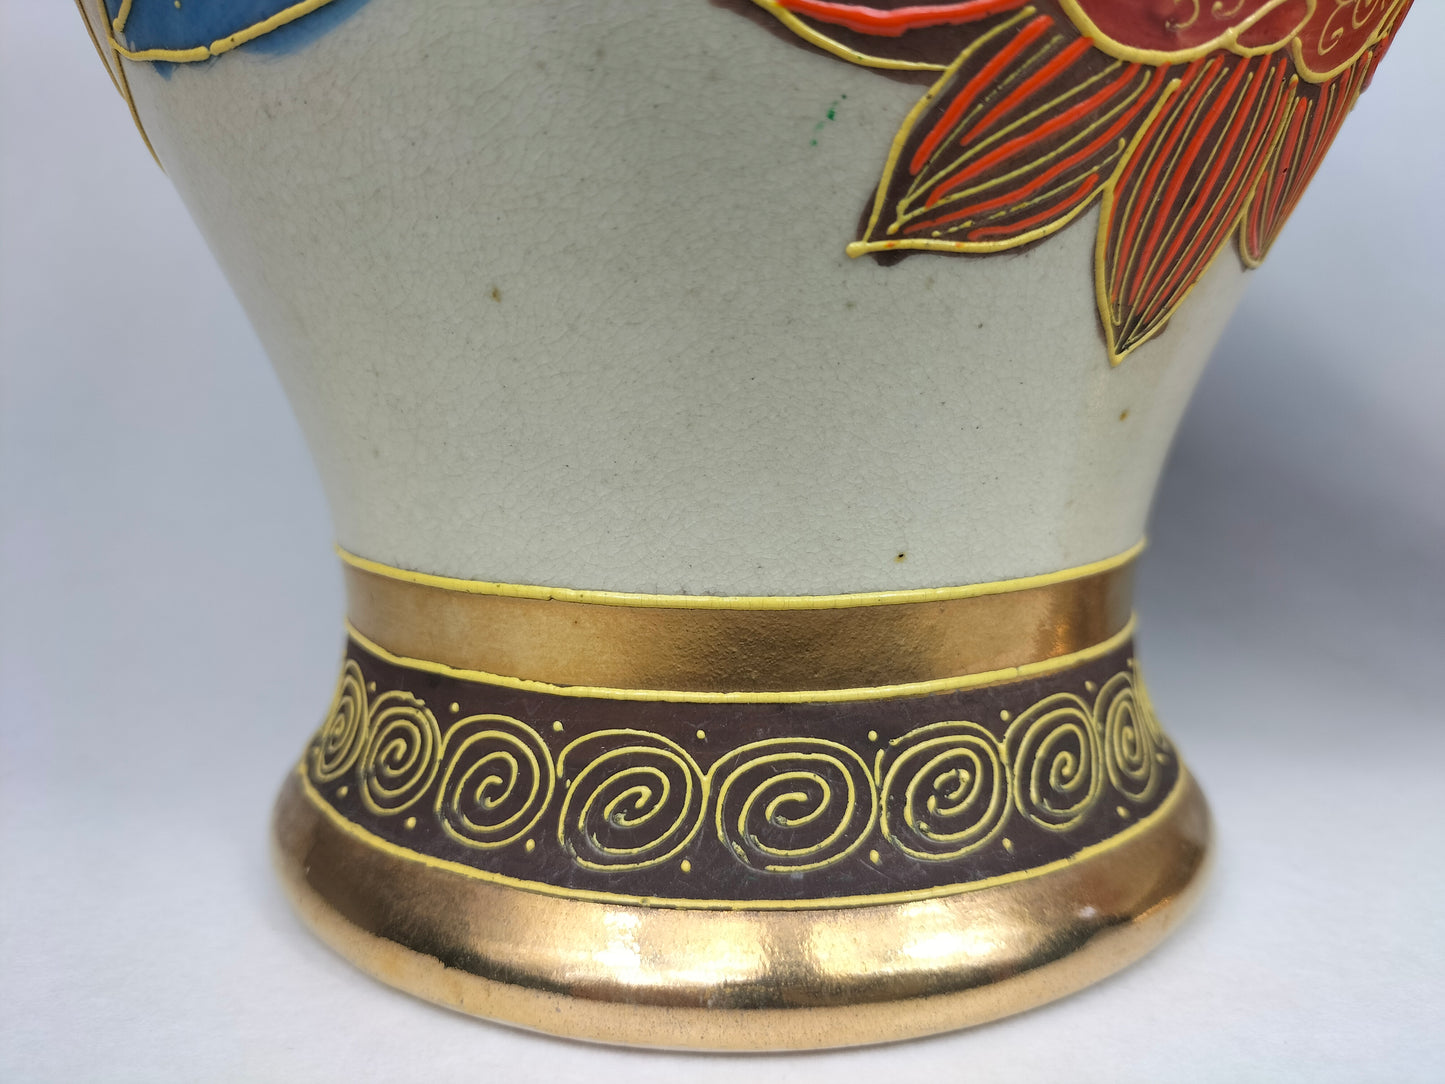 Antigo par de vasos satsuma japoneses com figuras e dragões // Início do século XX